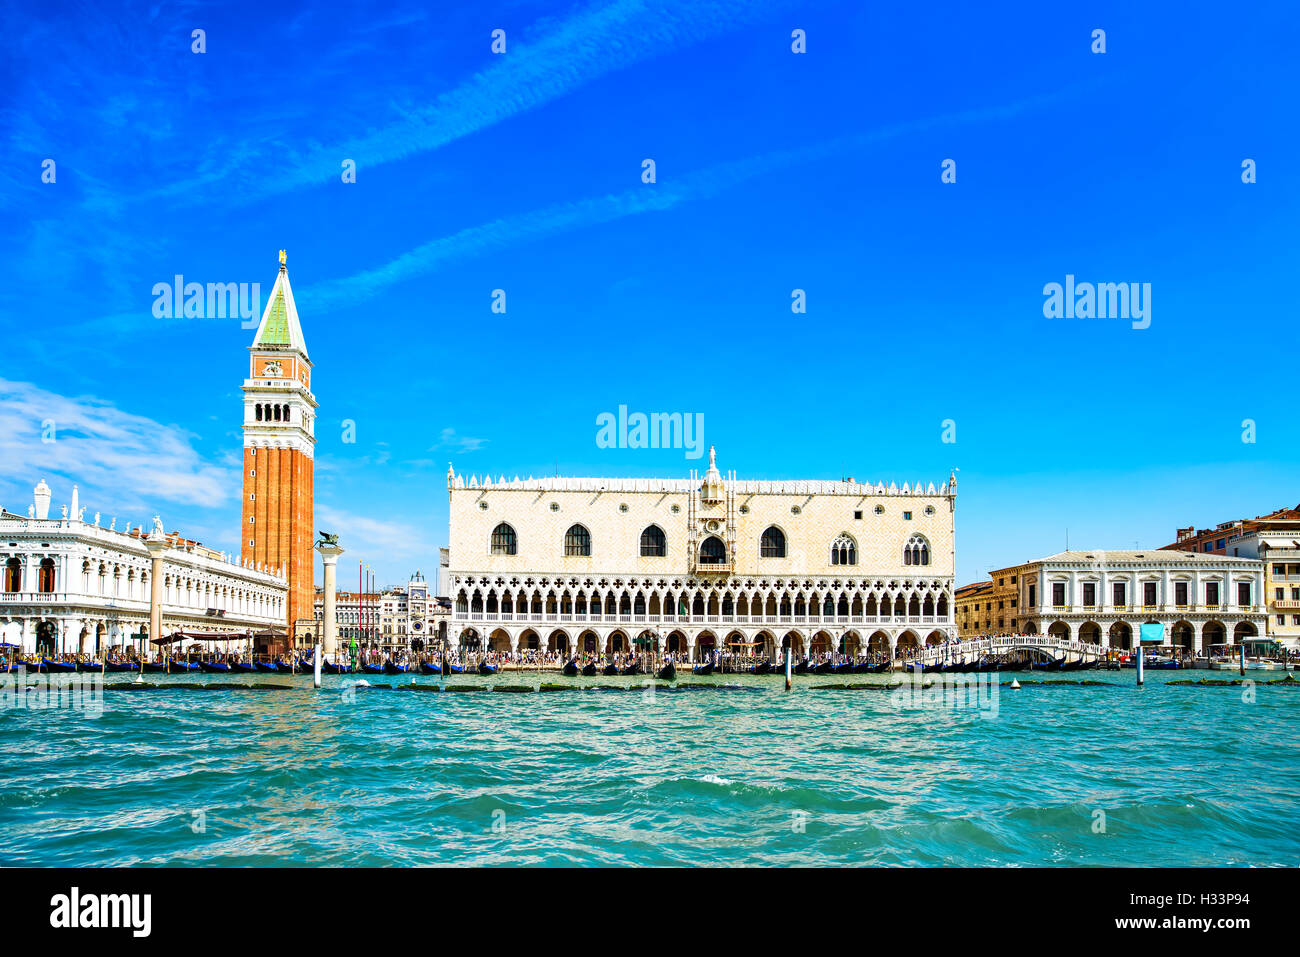 Histórico de Venecia, vista desde el mar de la Piazza San Marco o la plaza de San Marcos, el Campanile y Ducal o palacio Doge. Italia, Europa. Foto de stock